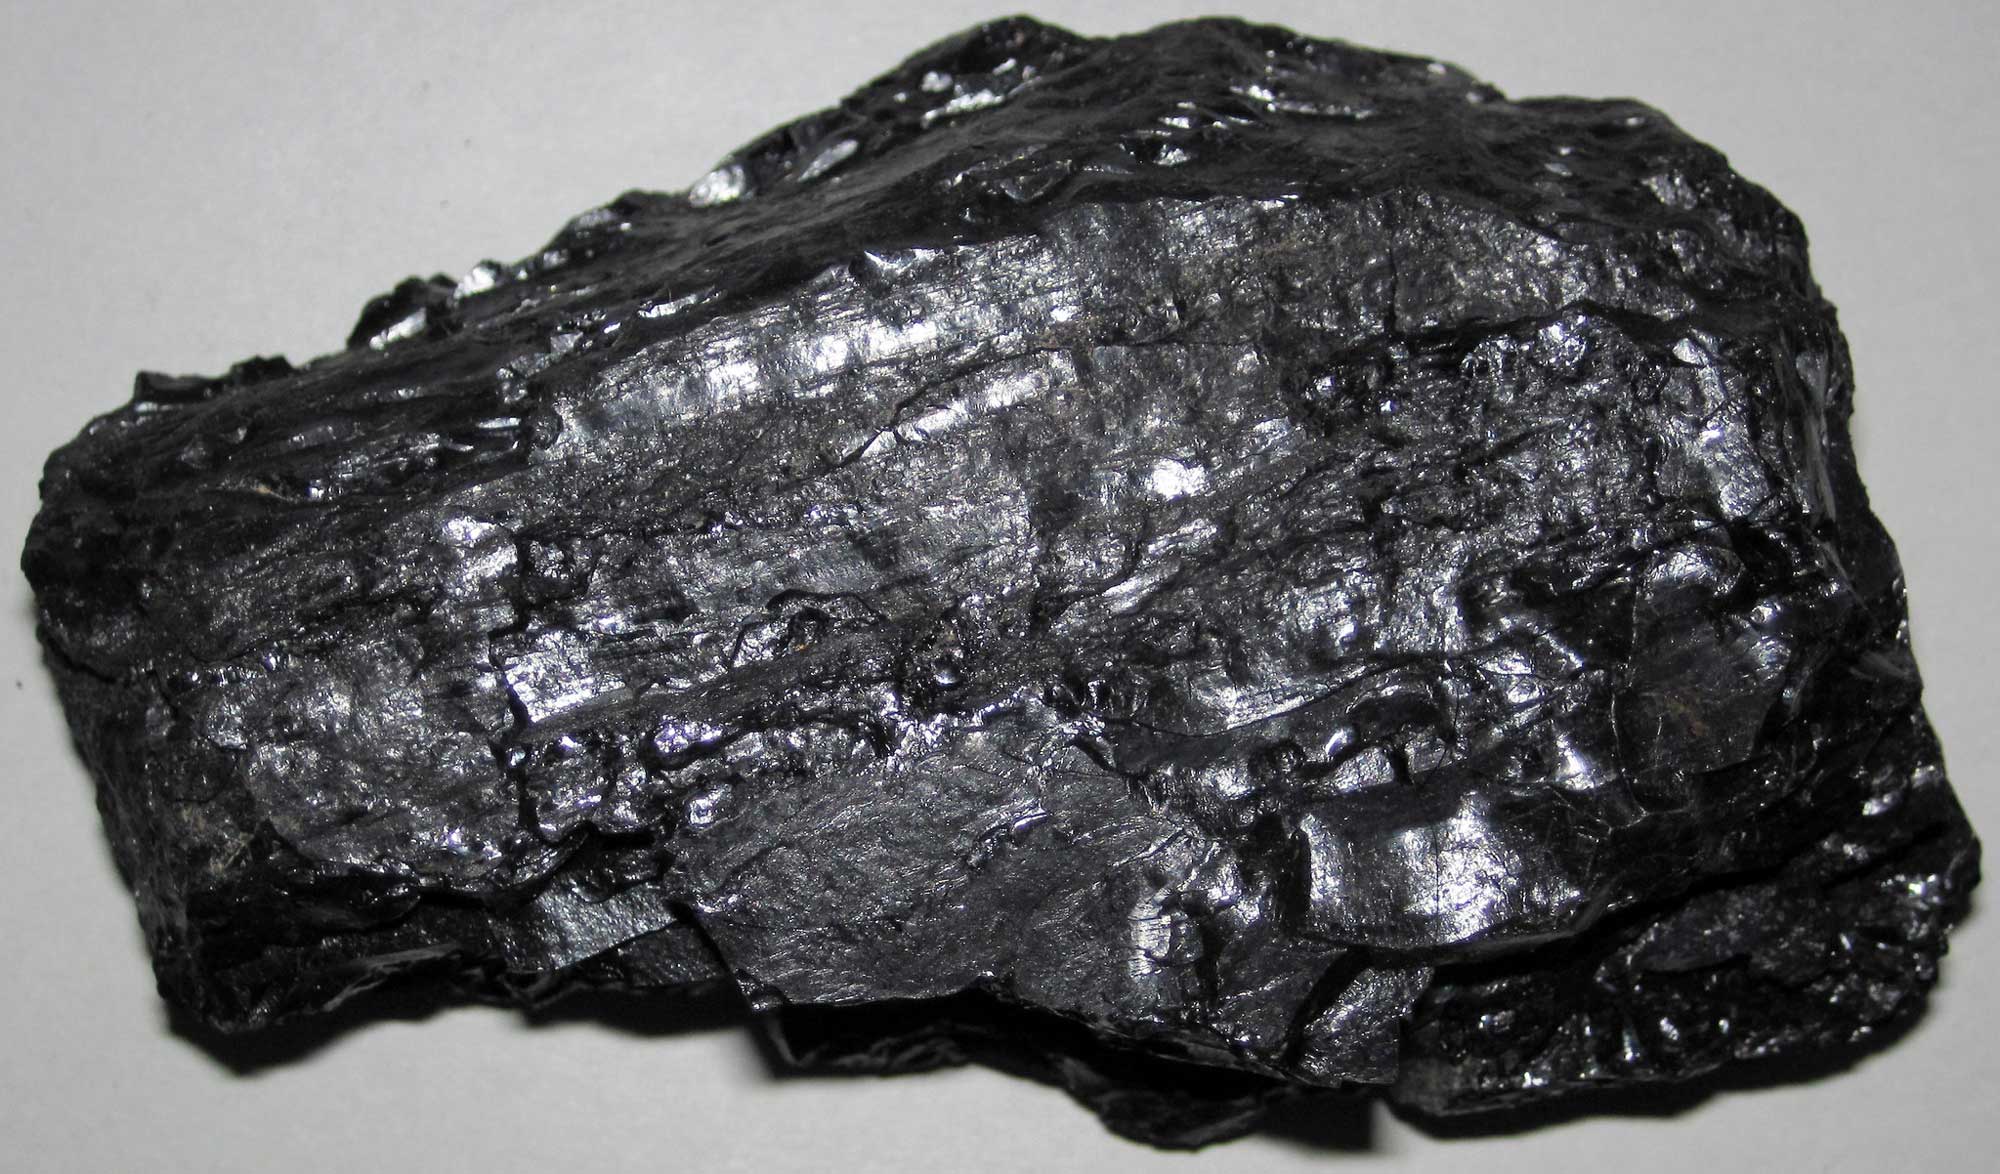 Photograph of a sample of bituminous coal from Utah.